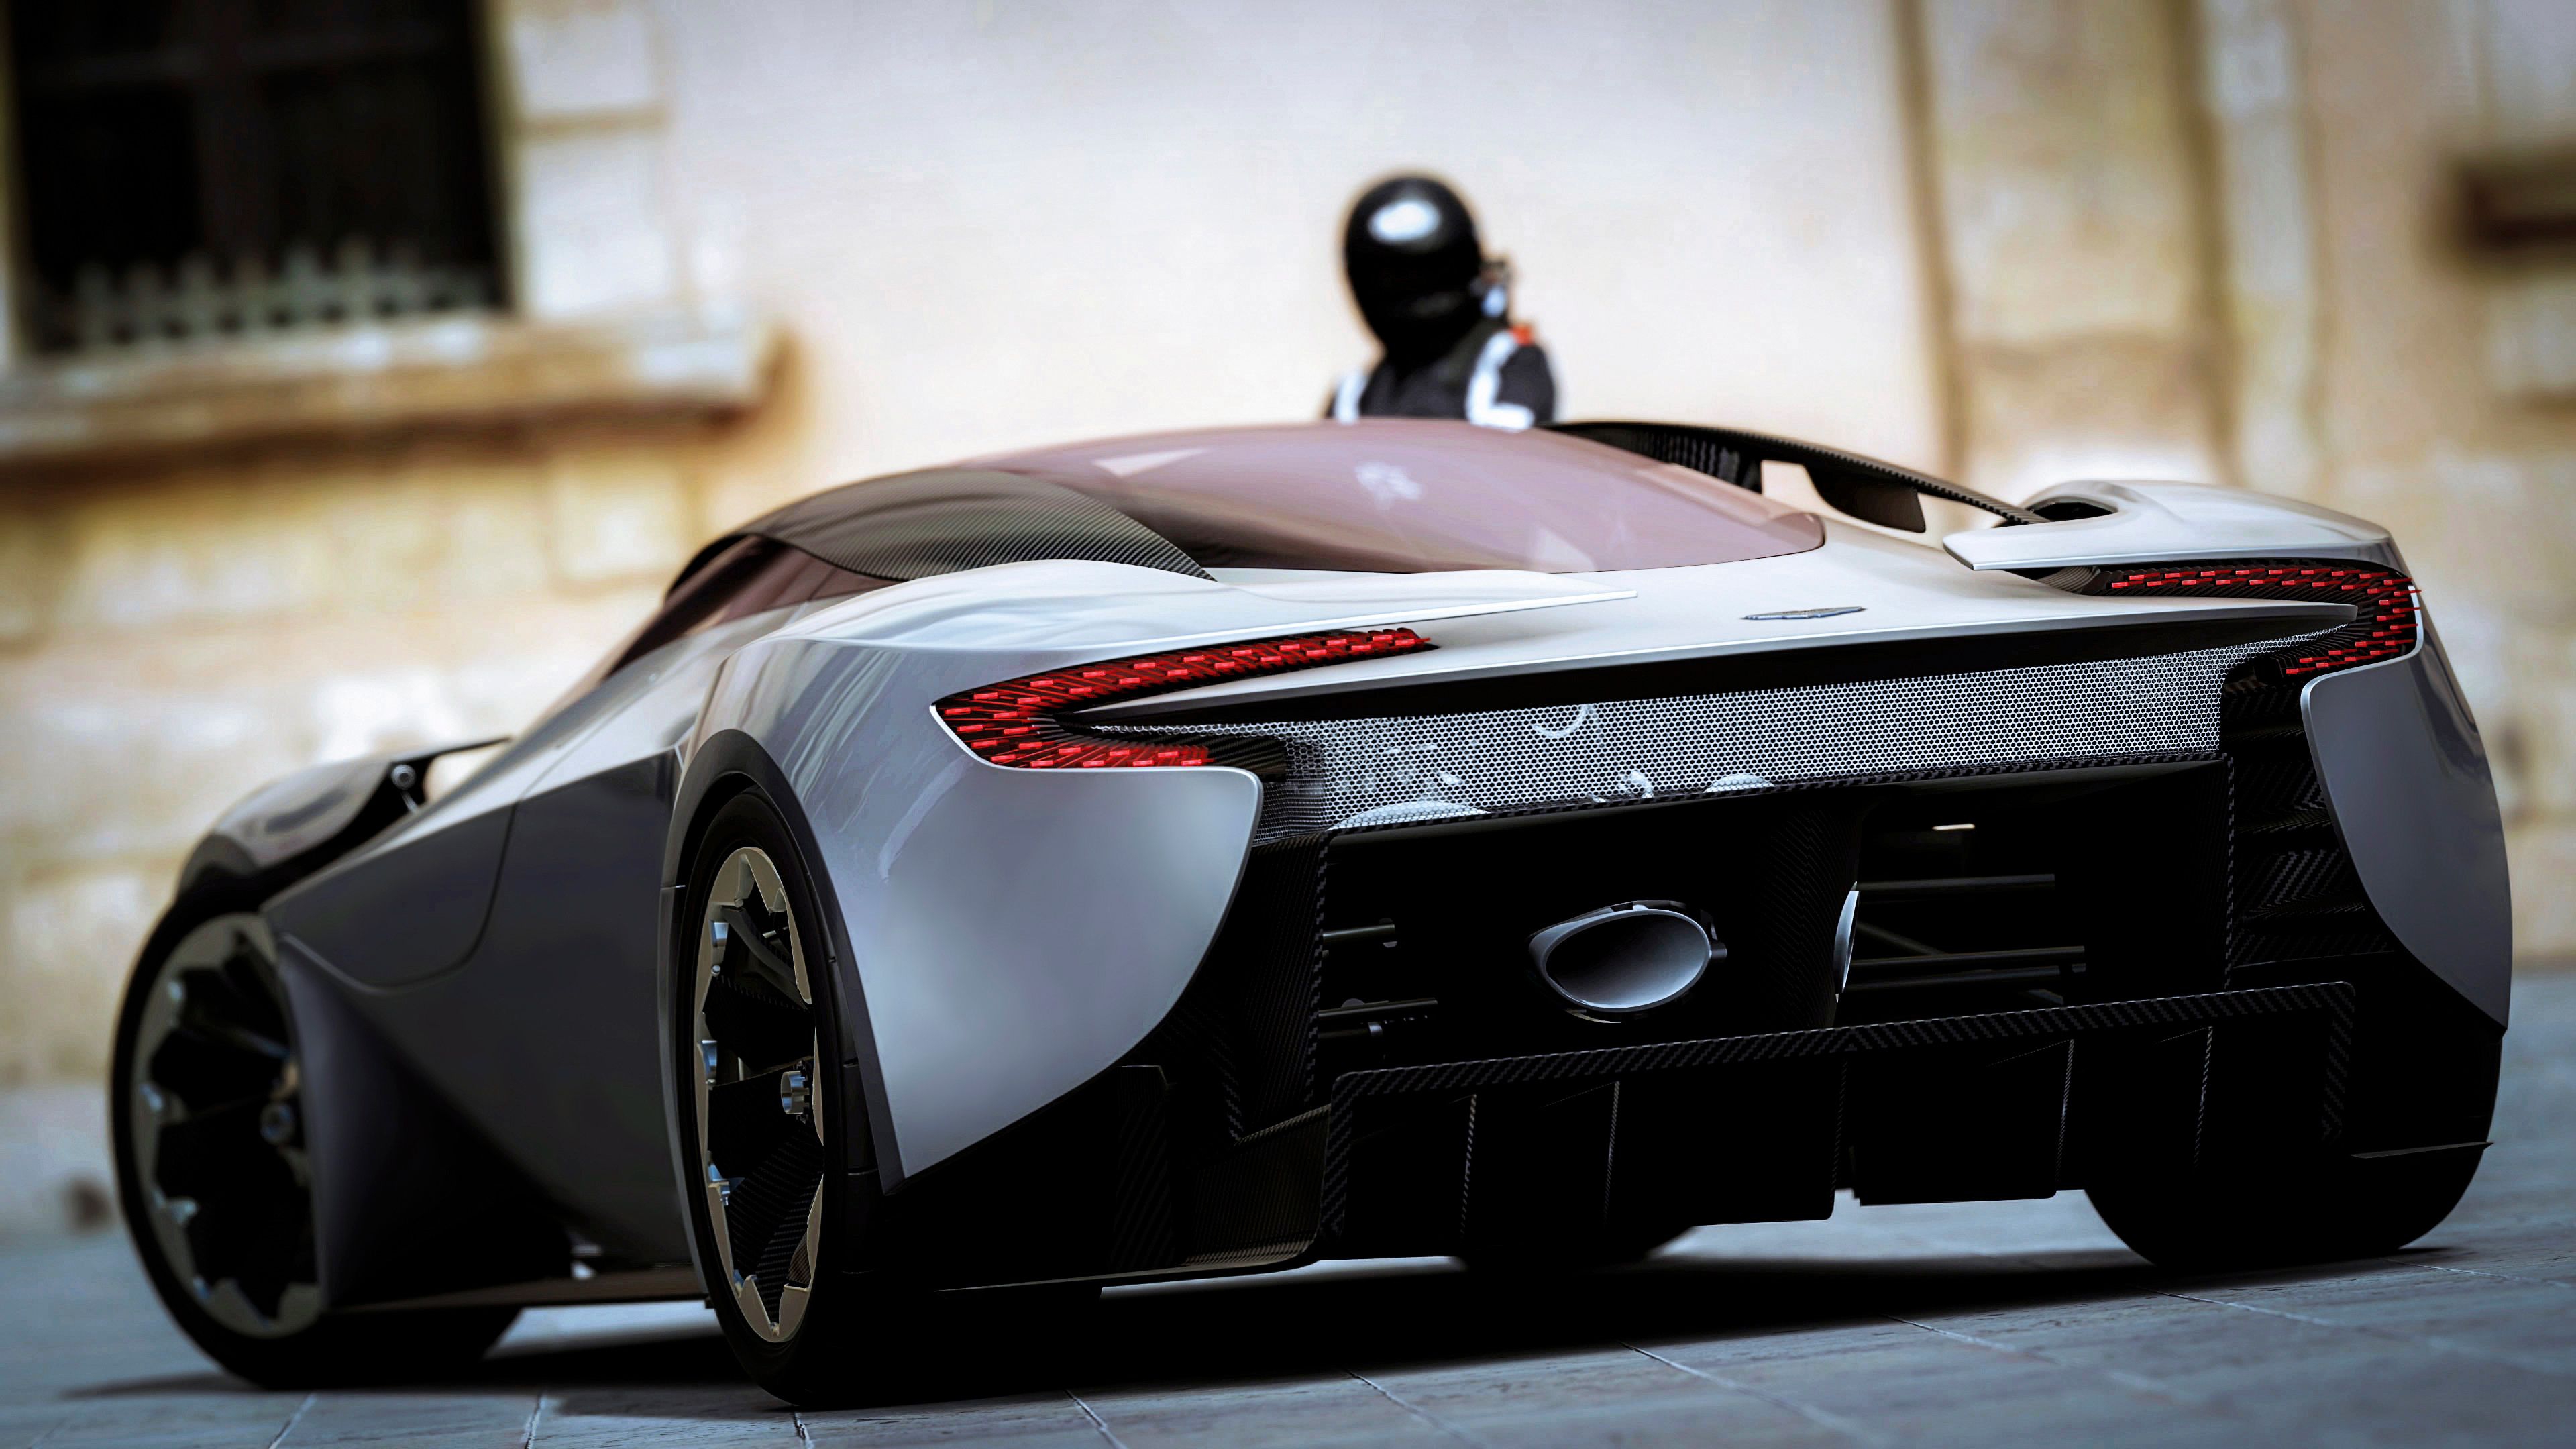 Fondos de pantalla: Aston Martin, vista trasera, negro, coche deportivo 3840x2160